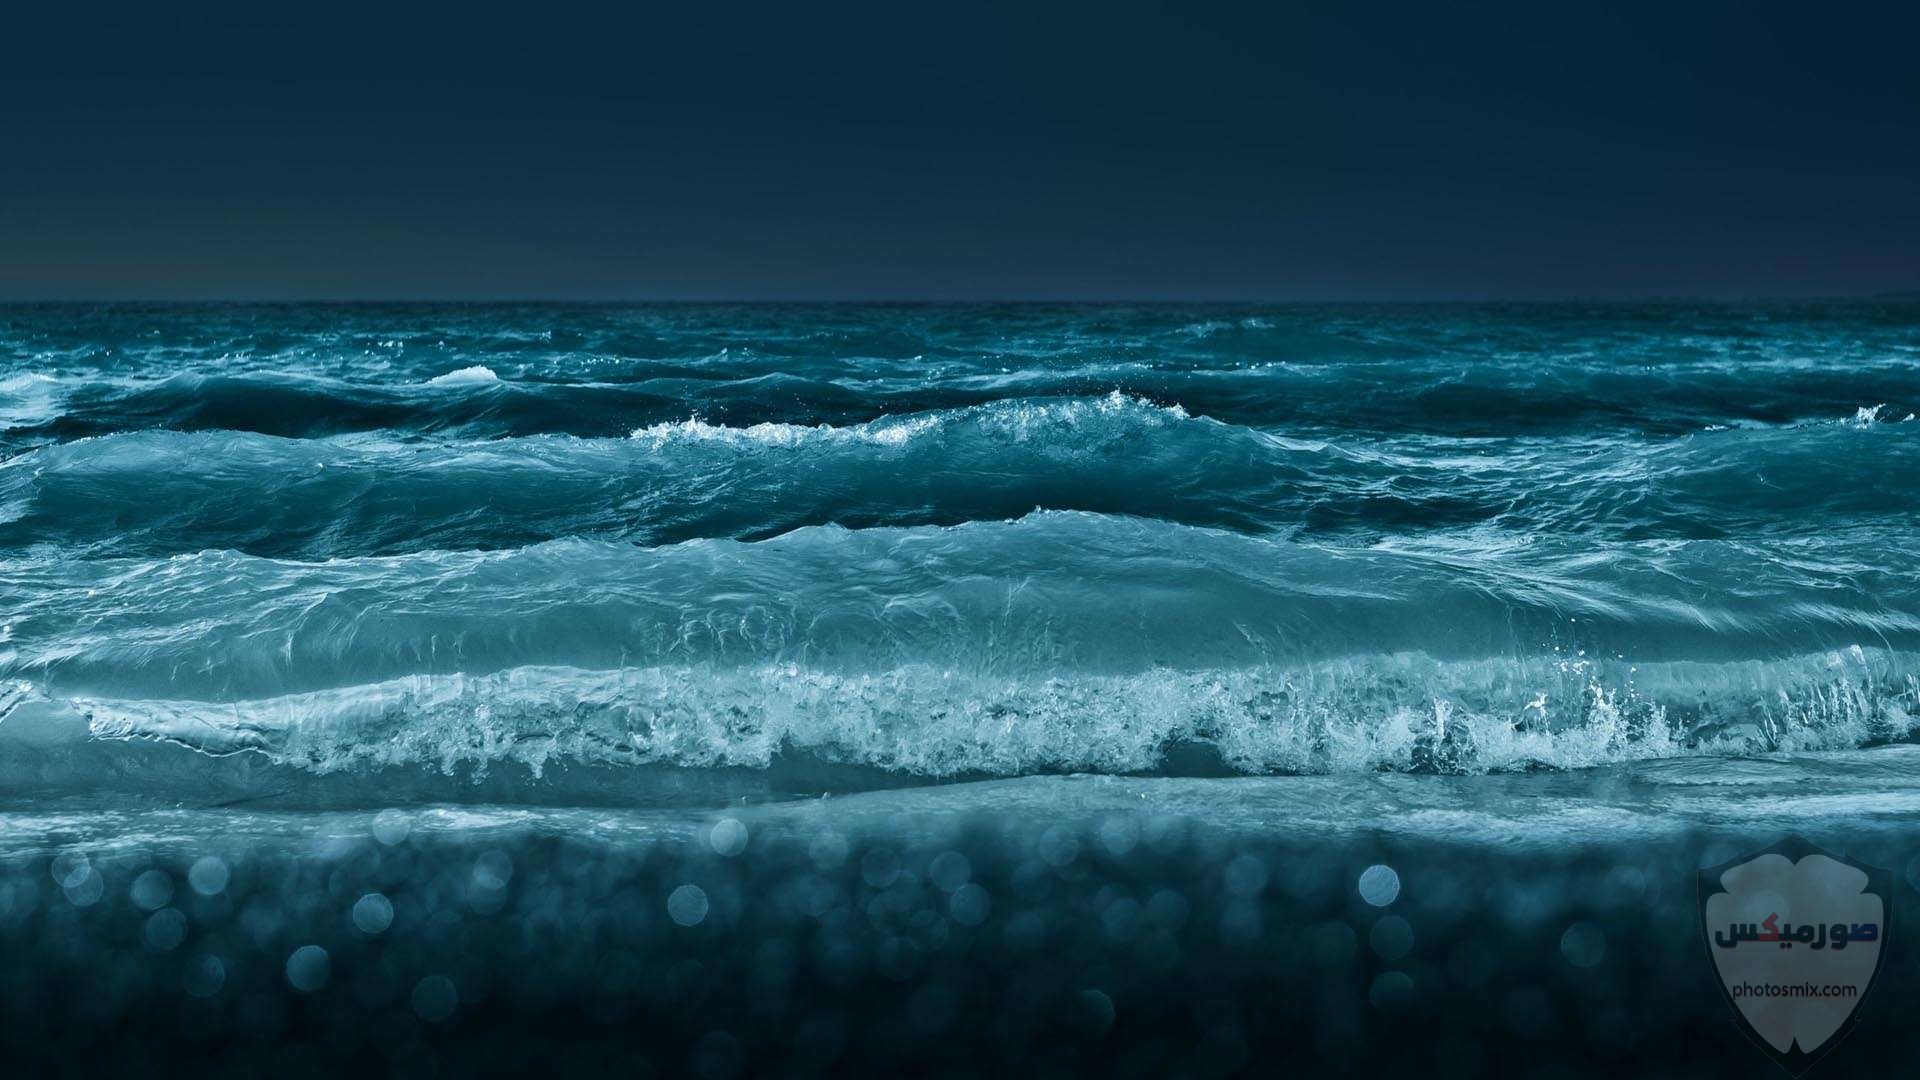 صور البحر 2020 خلفيات بحر وسفن للفوتوشوب 8